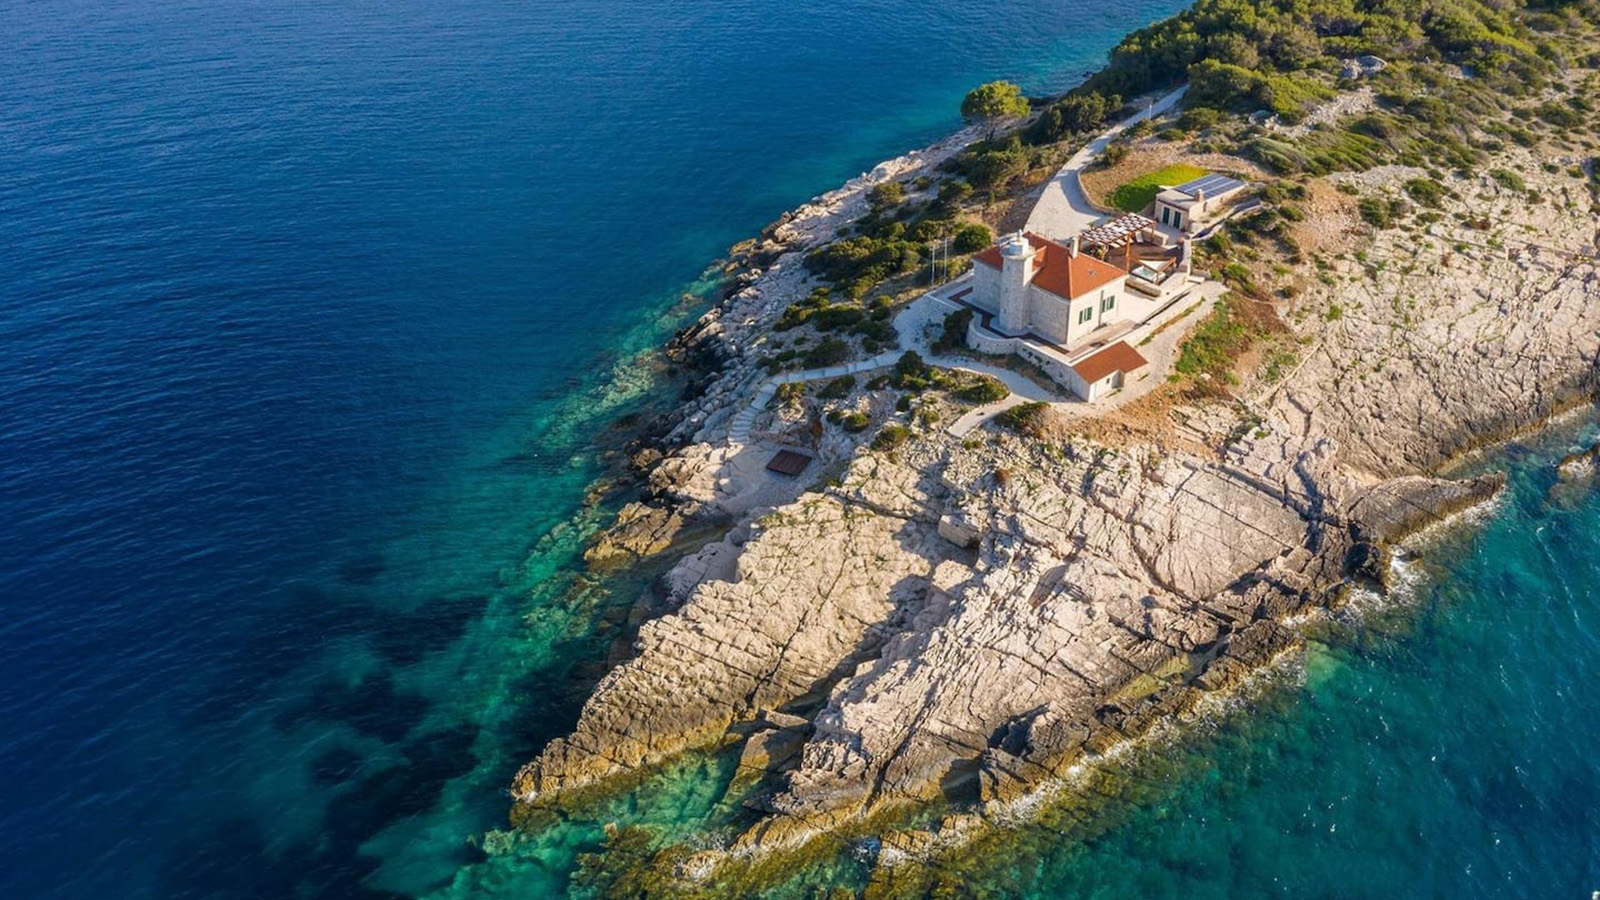 Luxury seafront villa on Host Island